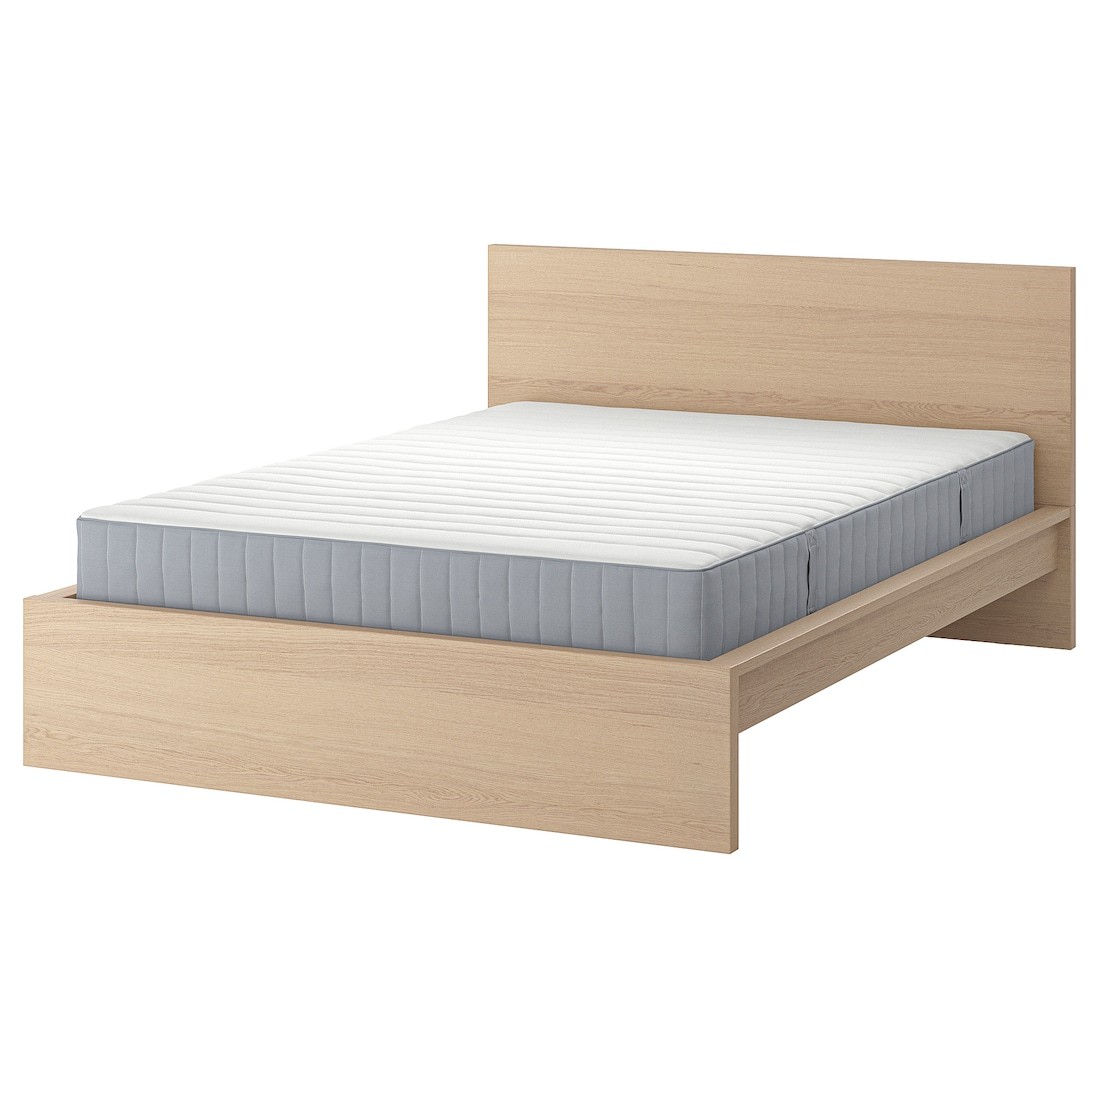 MALM Кровать с матрасом, дубовый шпон беленый / Valevåg жесткий, 160x200 см